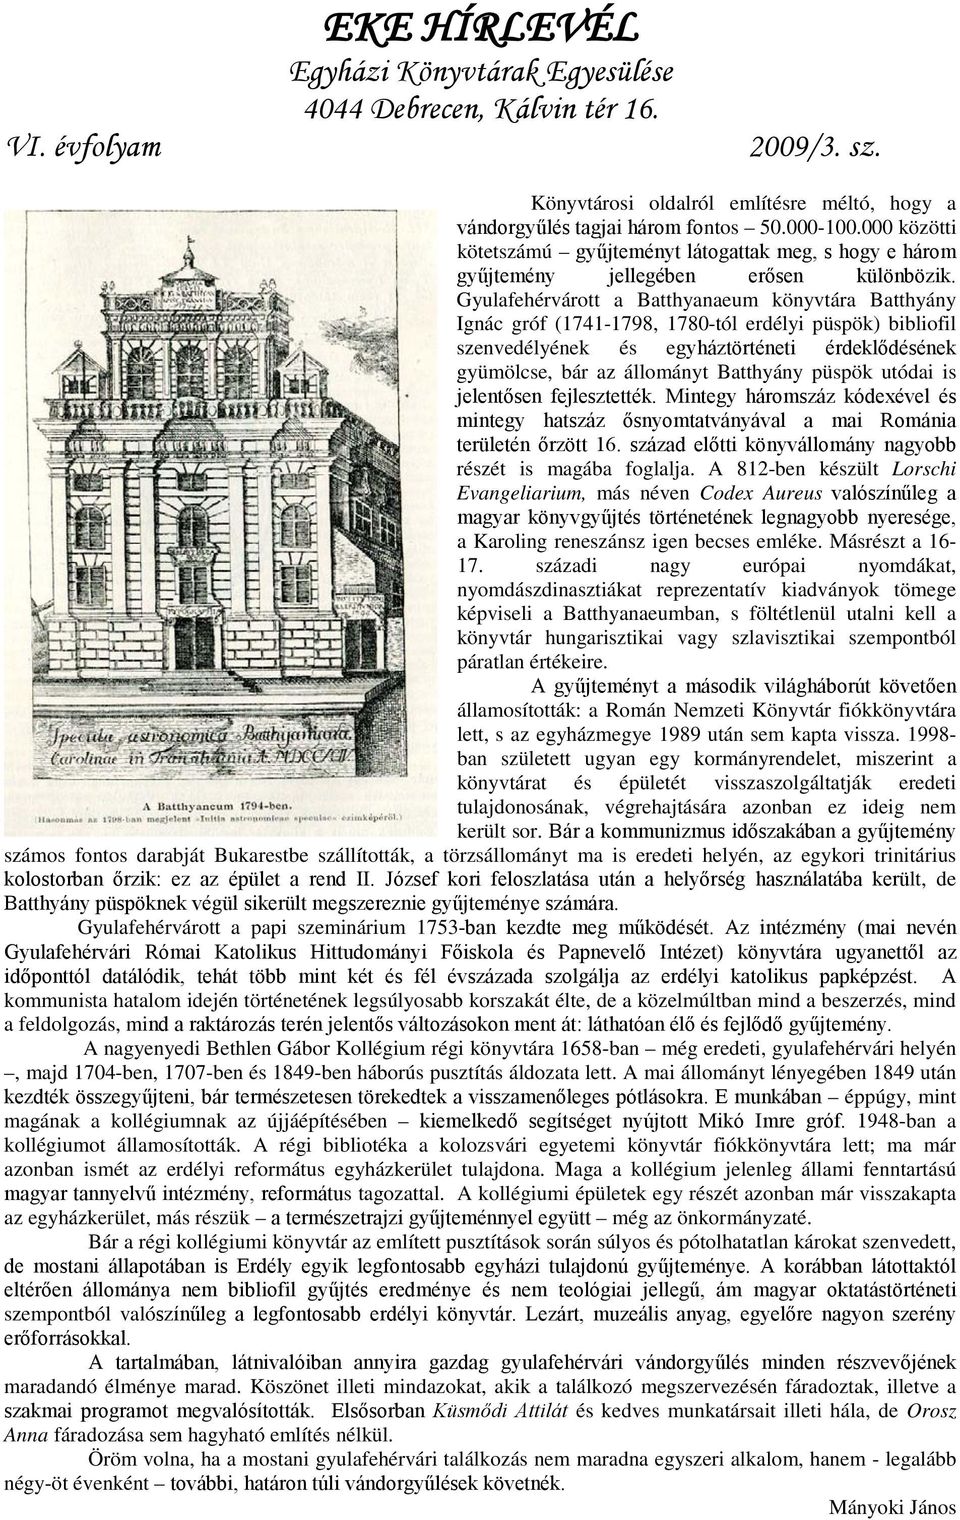 püspök utódai is jelentősen fejlesztették. Mintegy háromszáz kódexével és mintegy hatszáz ősnyomtatványával a mai Románia területén őrzött 16.